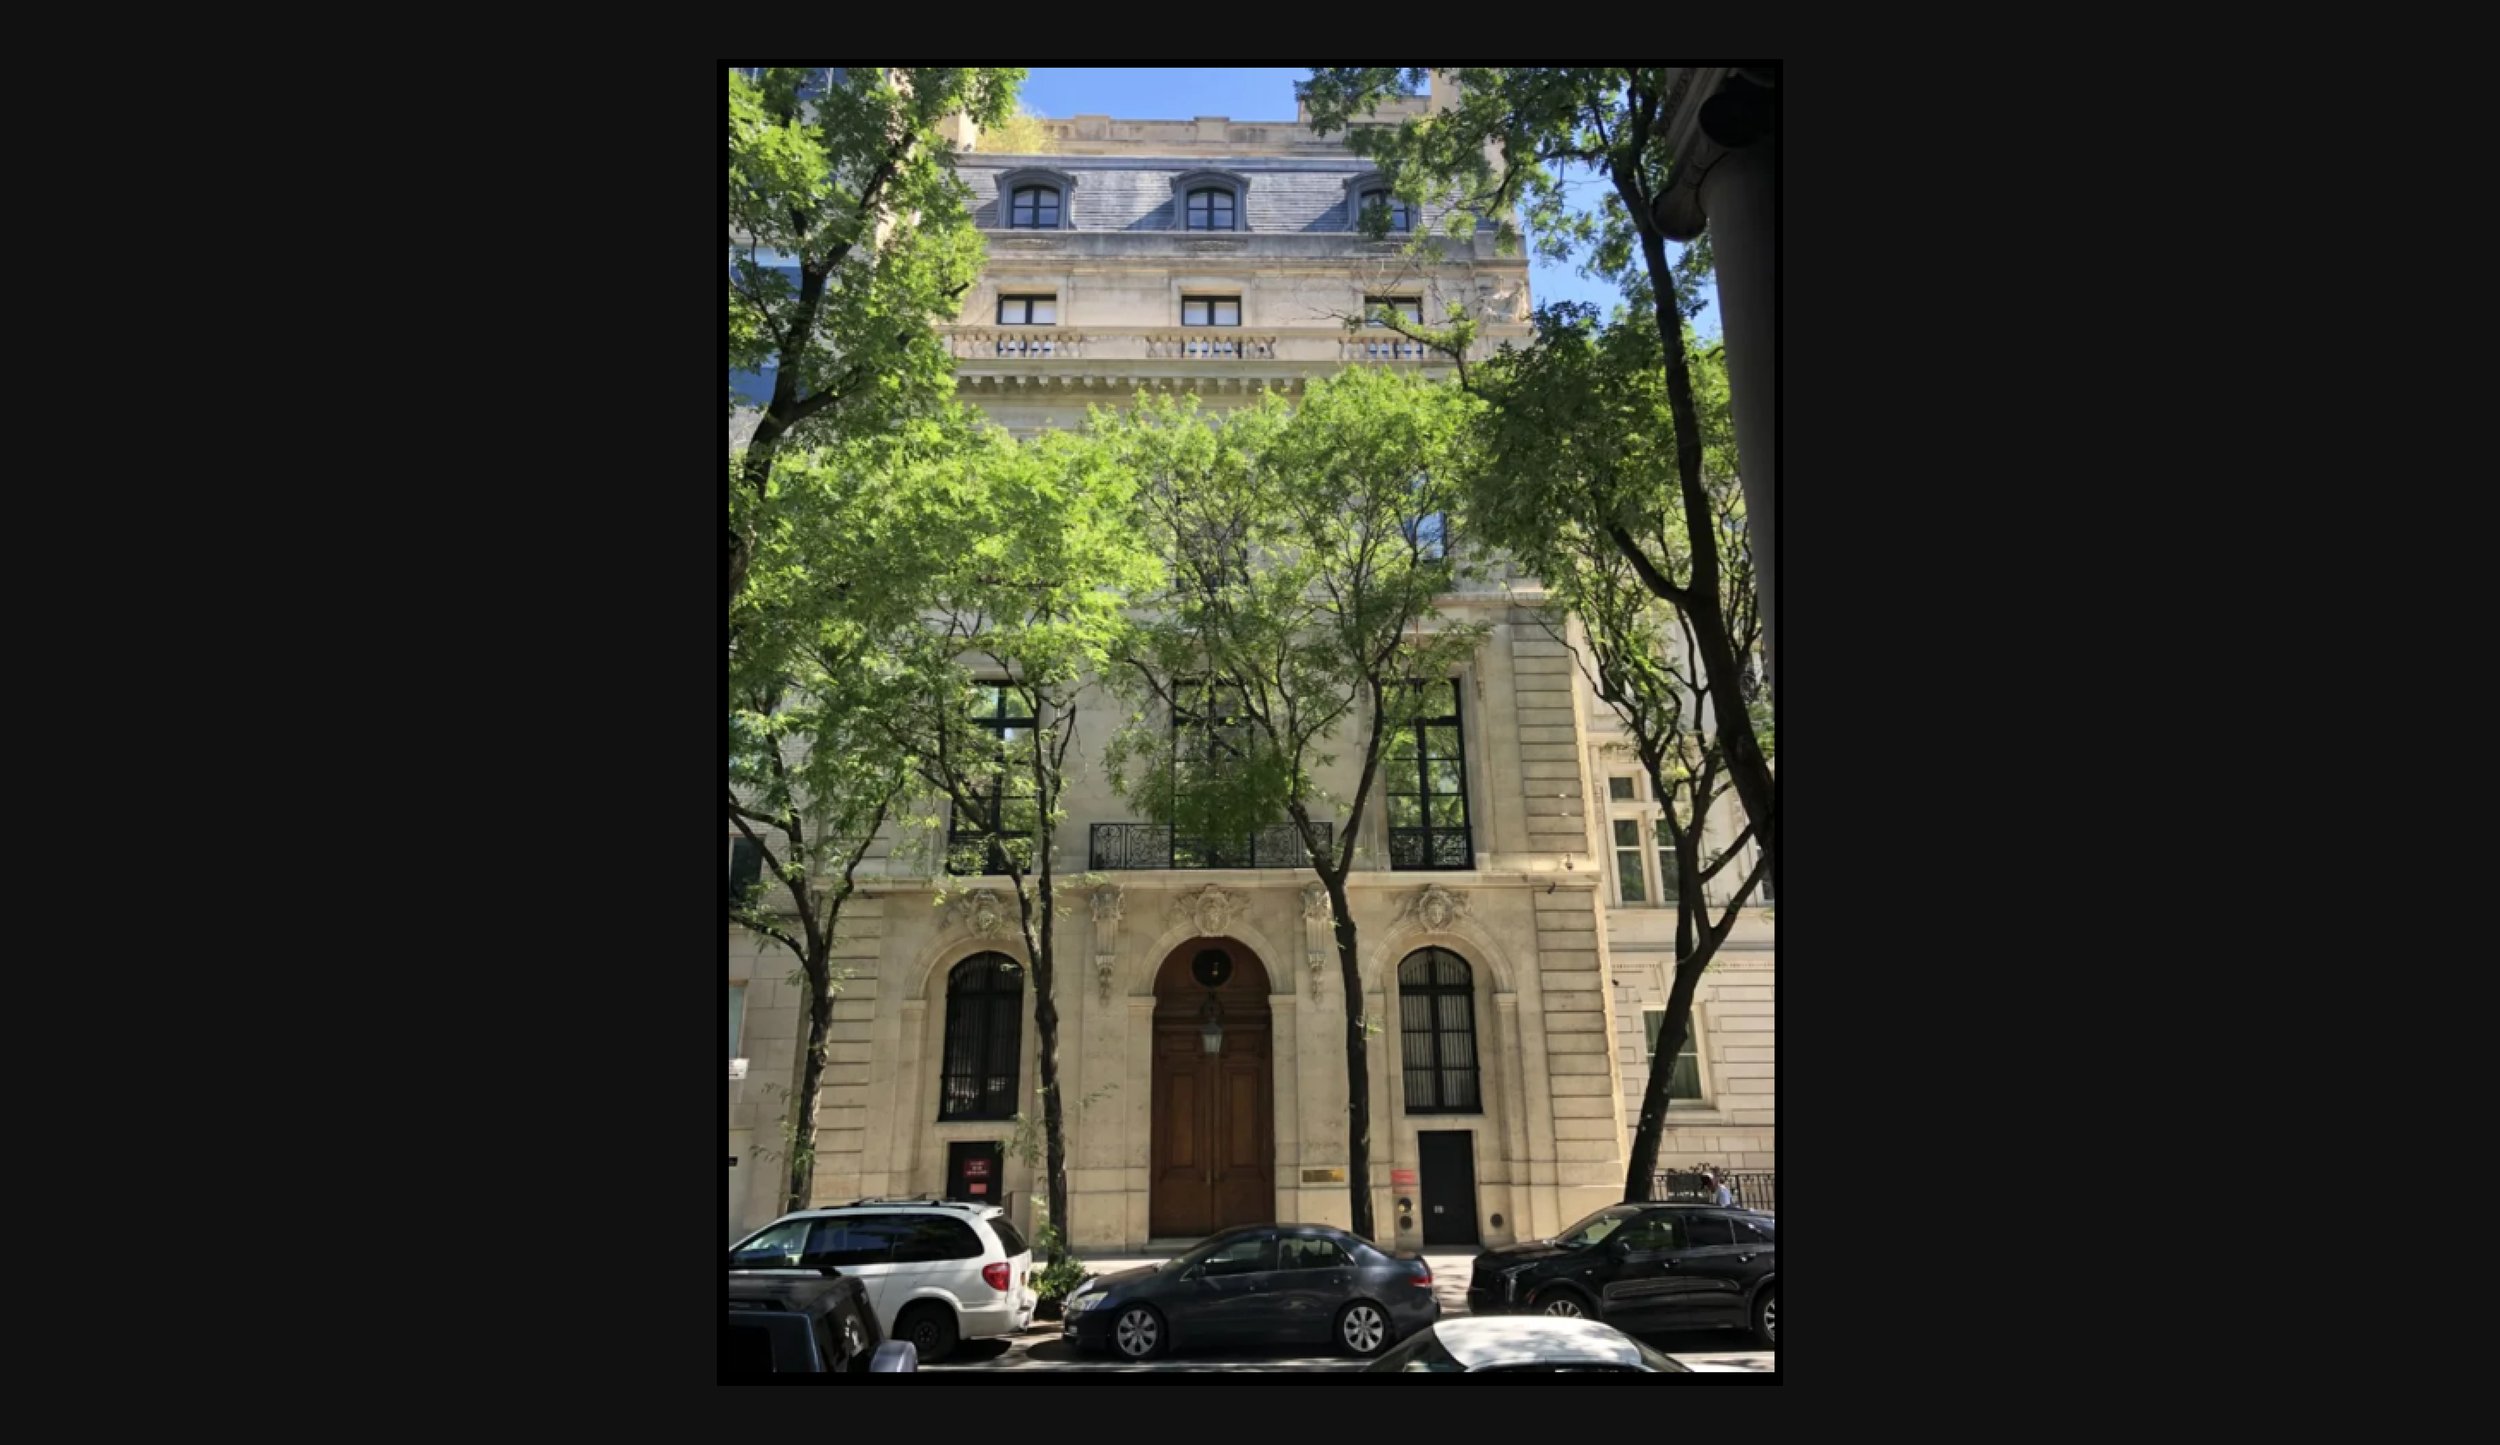  &nbsp;Epstein’s New York mansion 